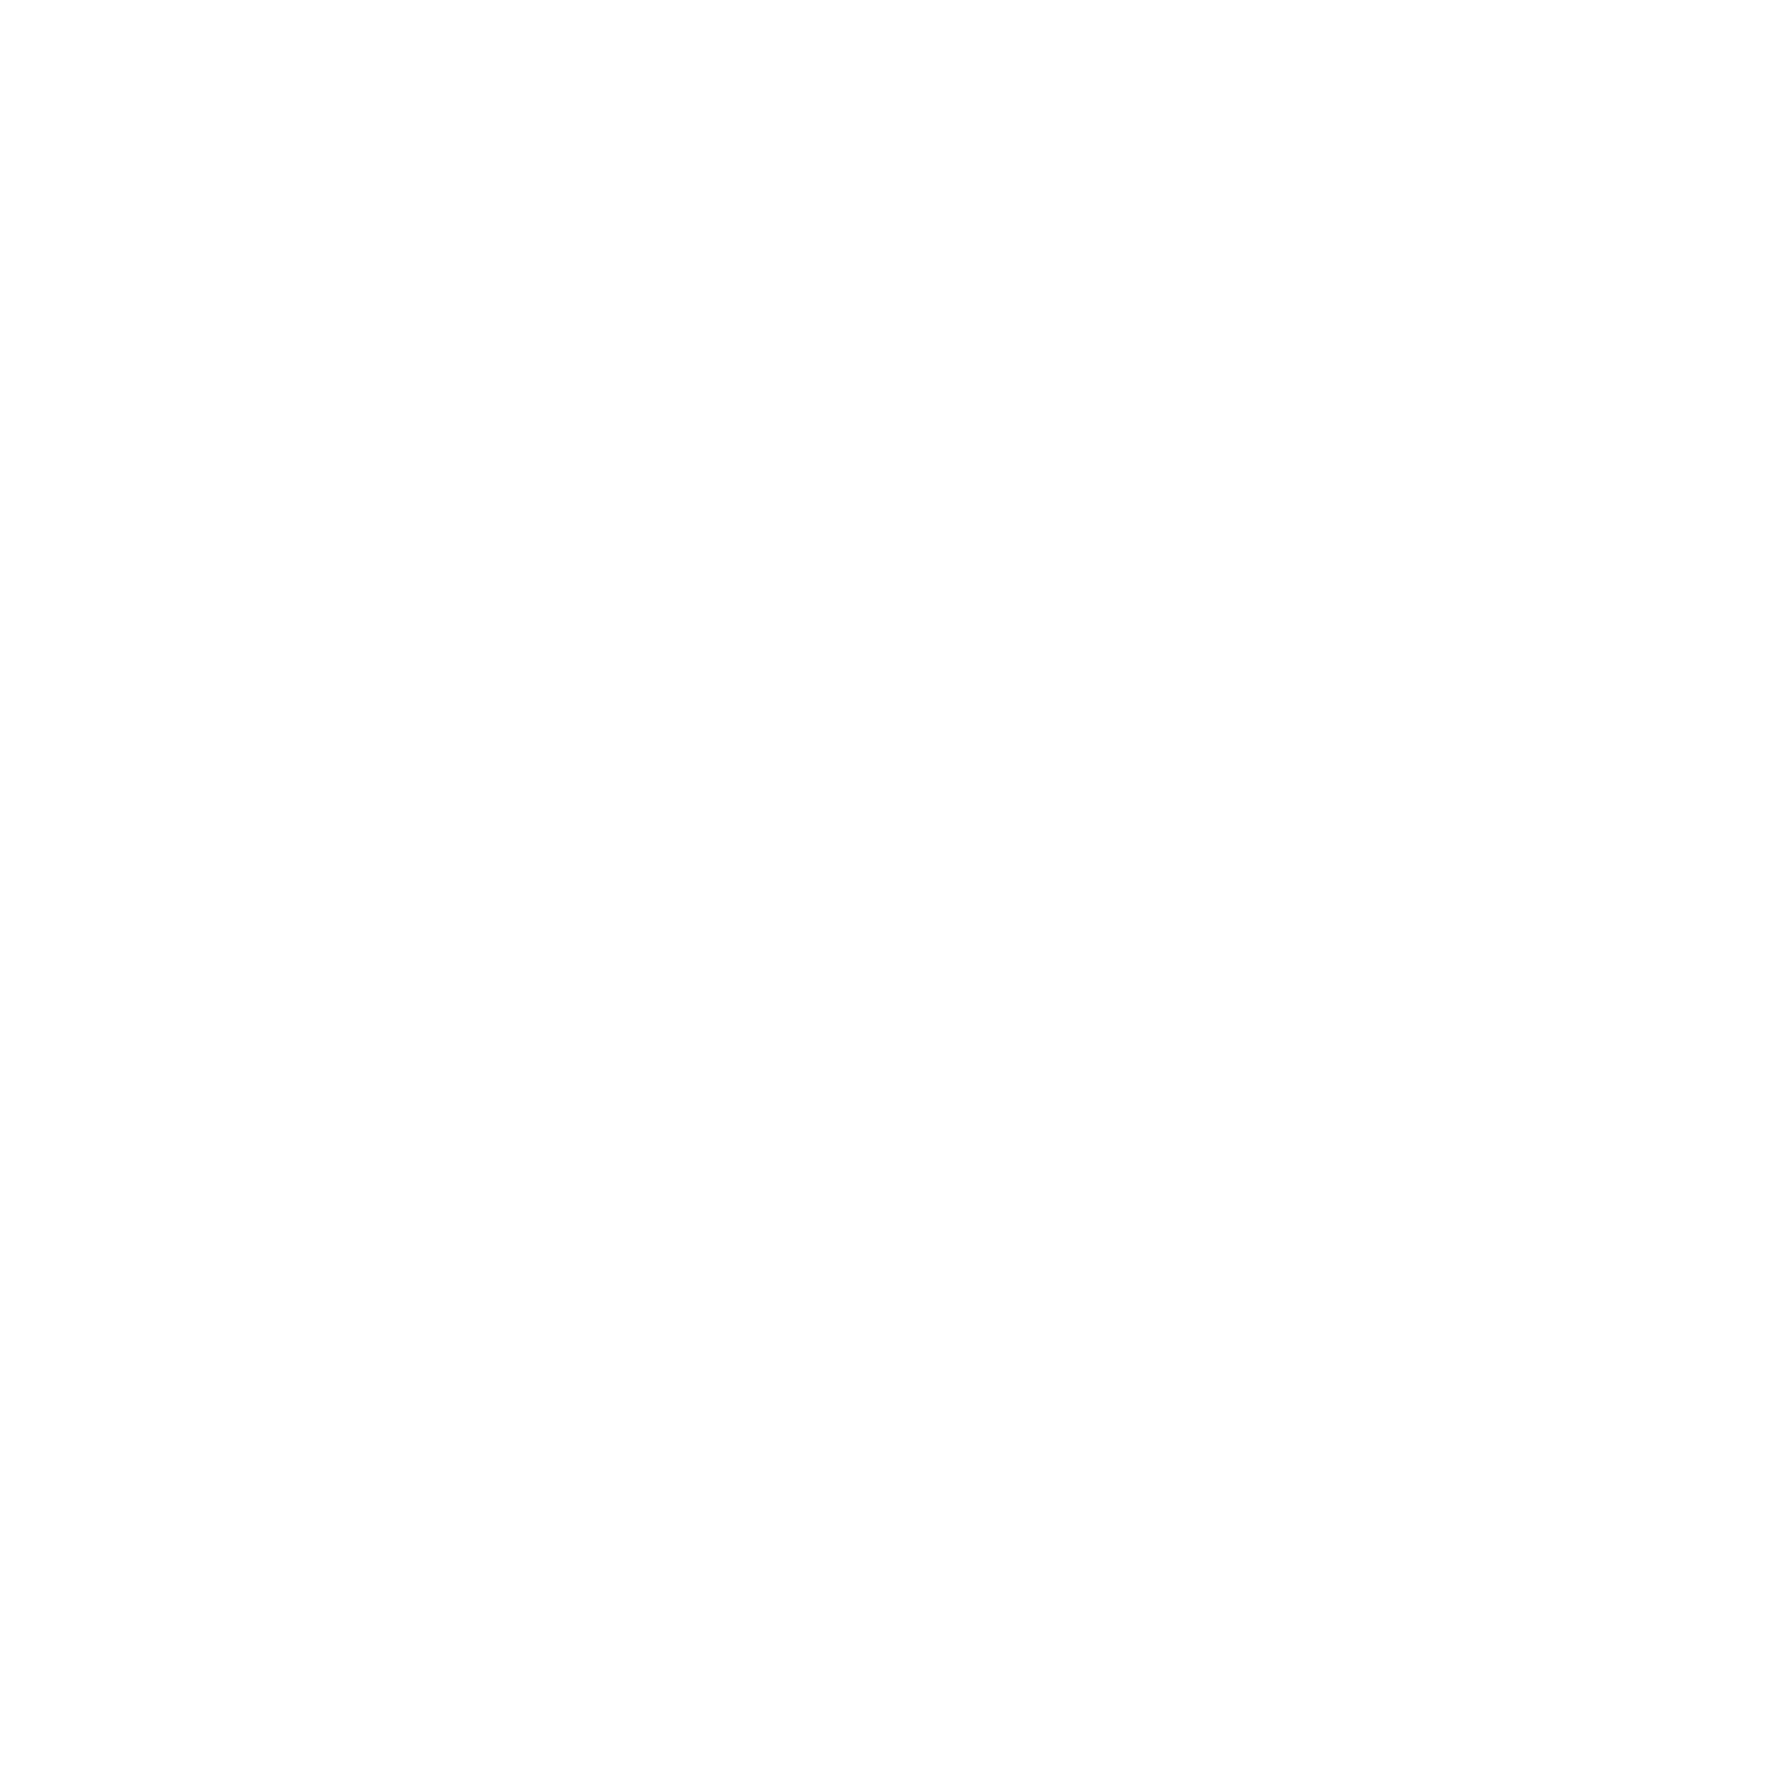 ESOP Certified Mark